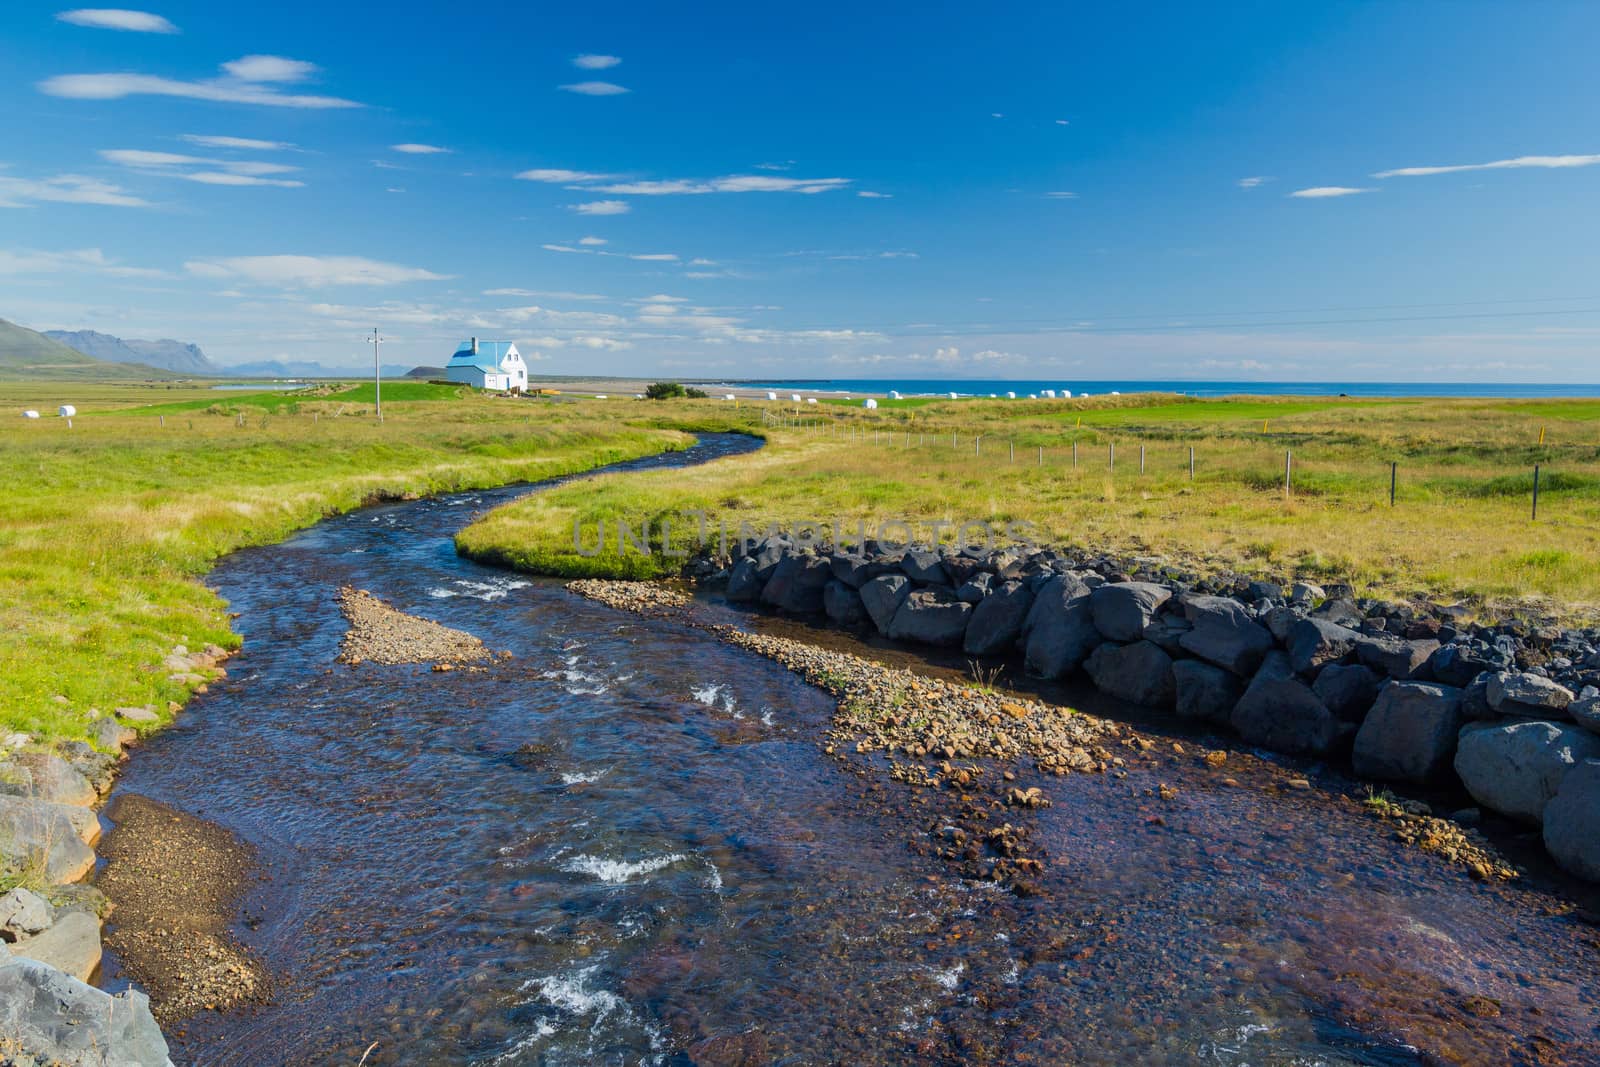 Summer Iceland Landscape by maxoliki